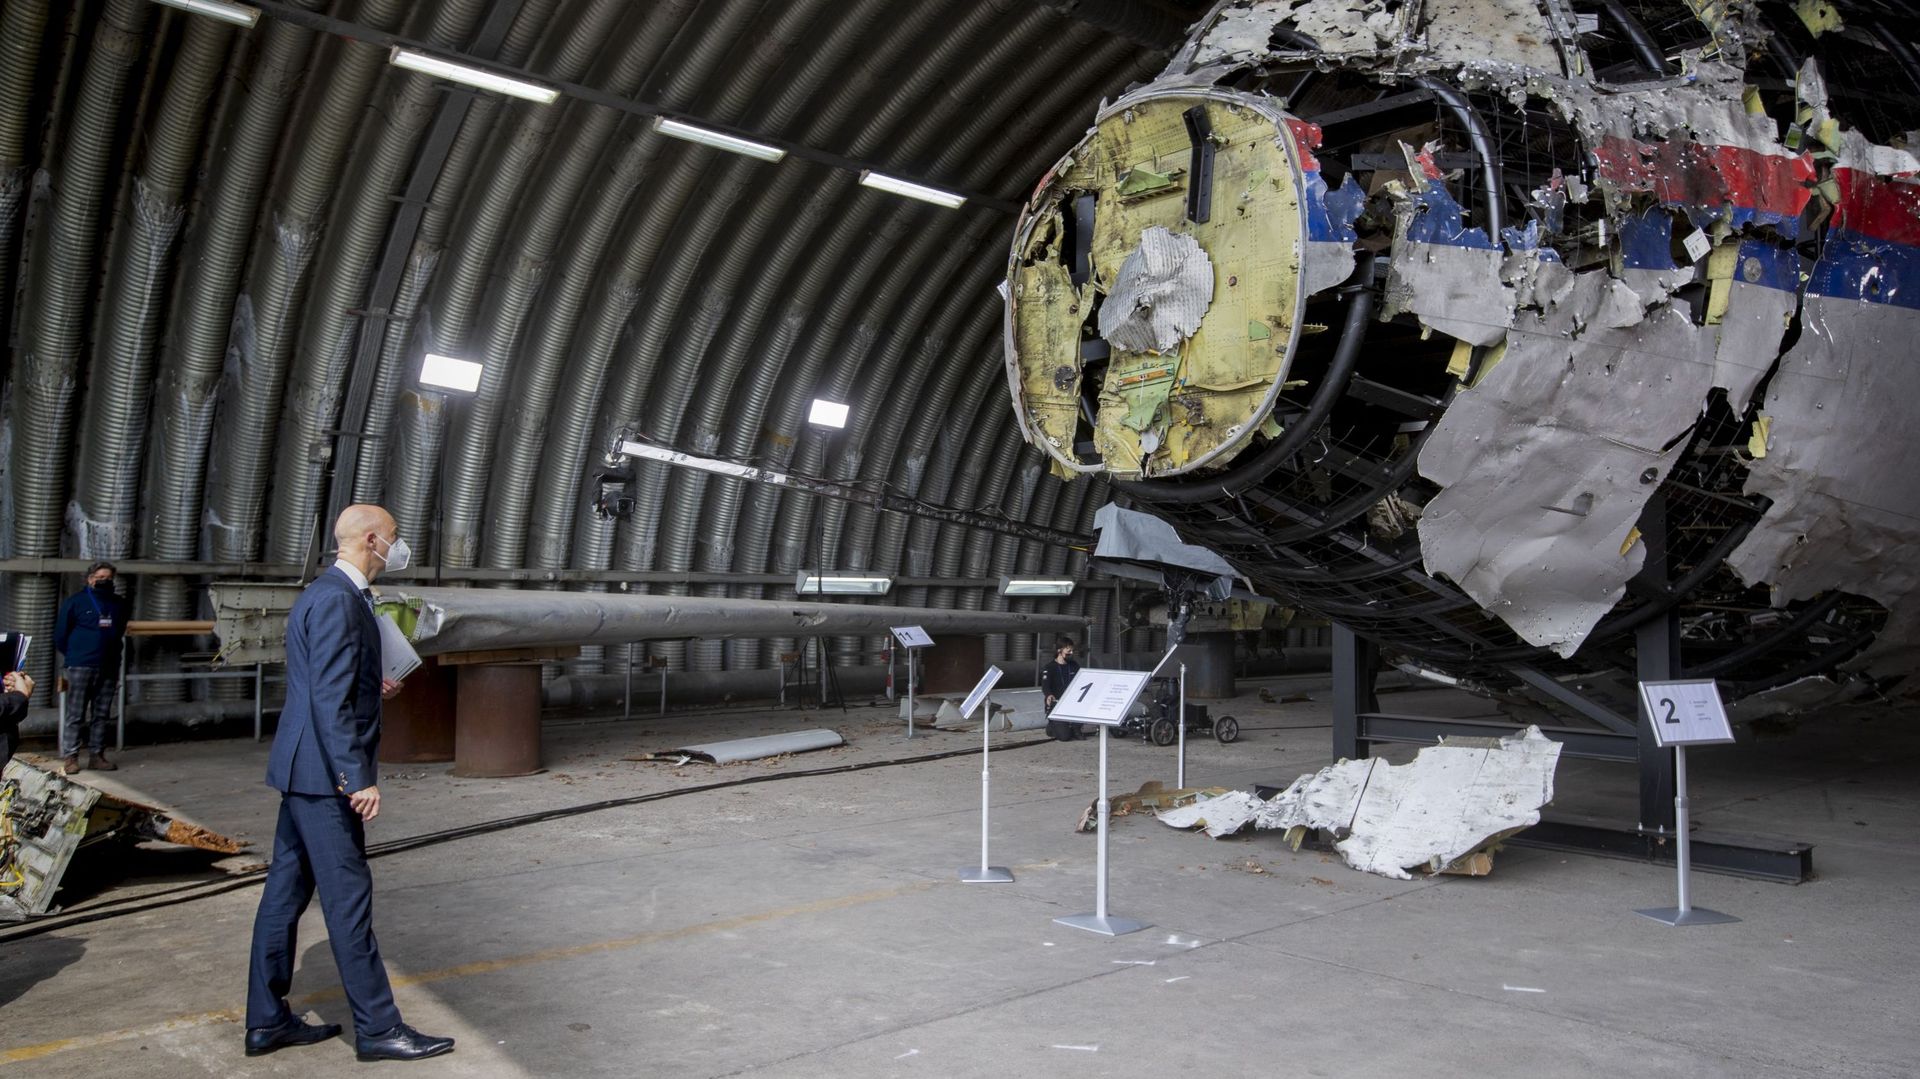 L'éoave du vol MH17